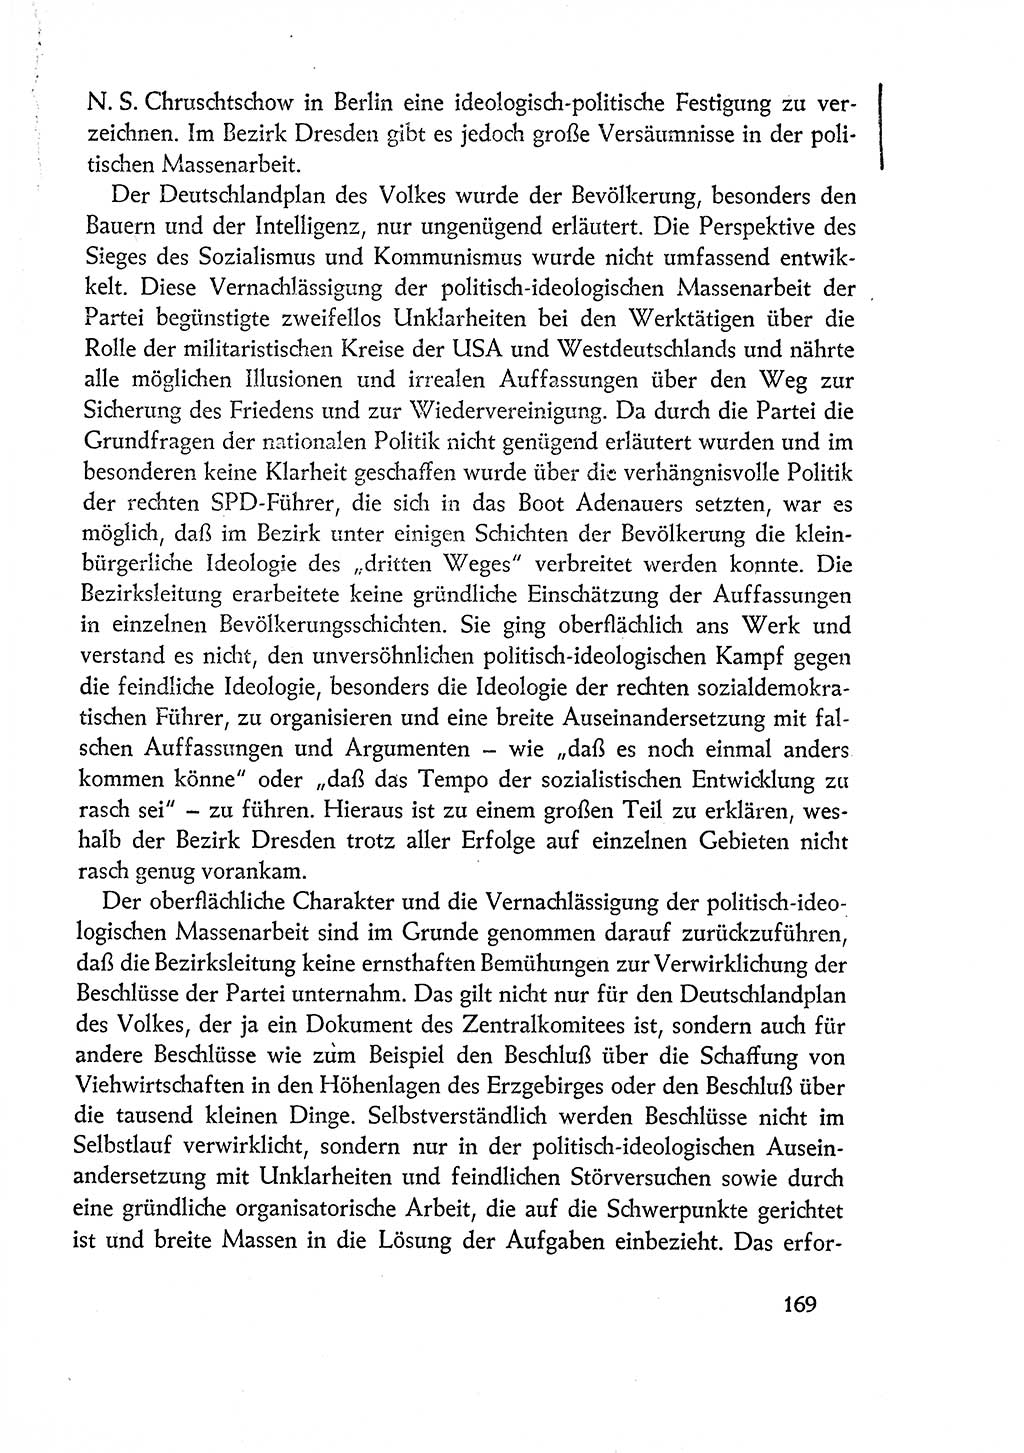 Dokumente der Sozialistischen Einheitspartei Deutschlands (SED) [Deutsche Demokratische Republik (DDR)] 1960-1961, Seite 169 (Dok. SED DDR 1960-1961, S. 169)